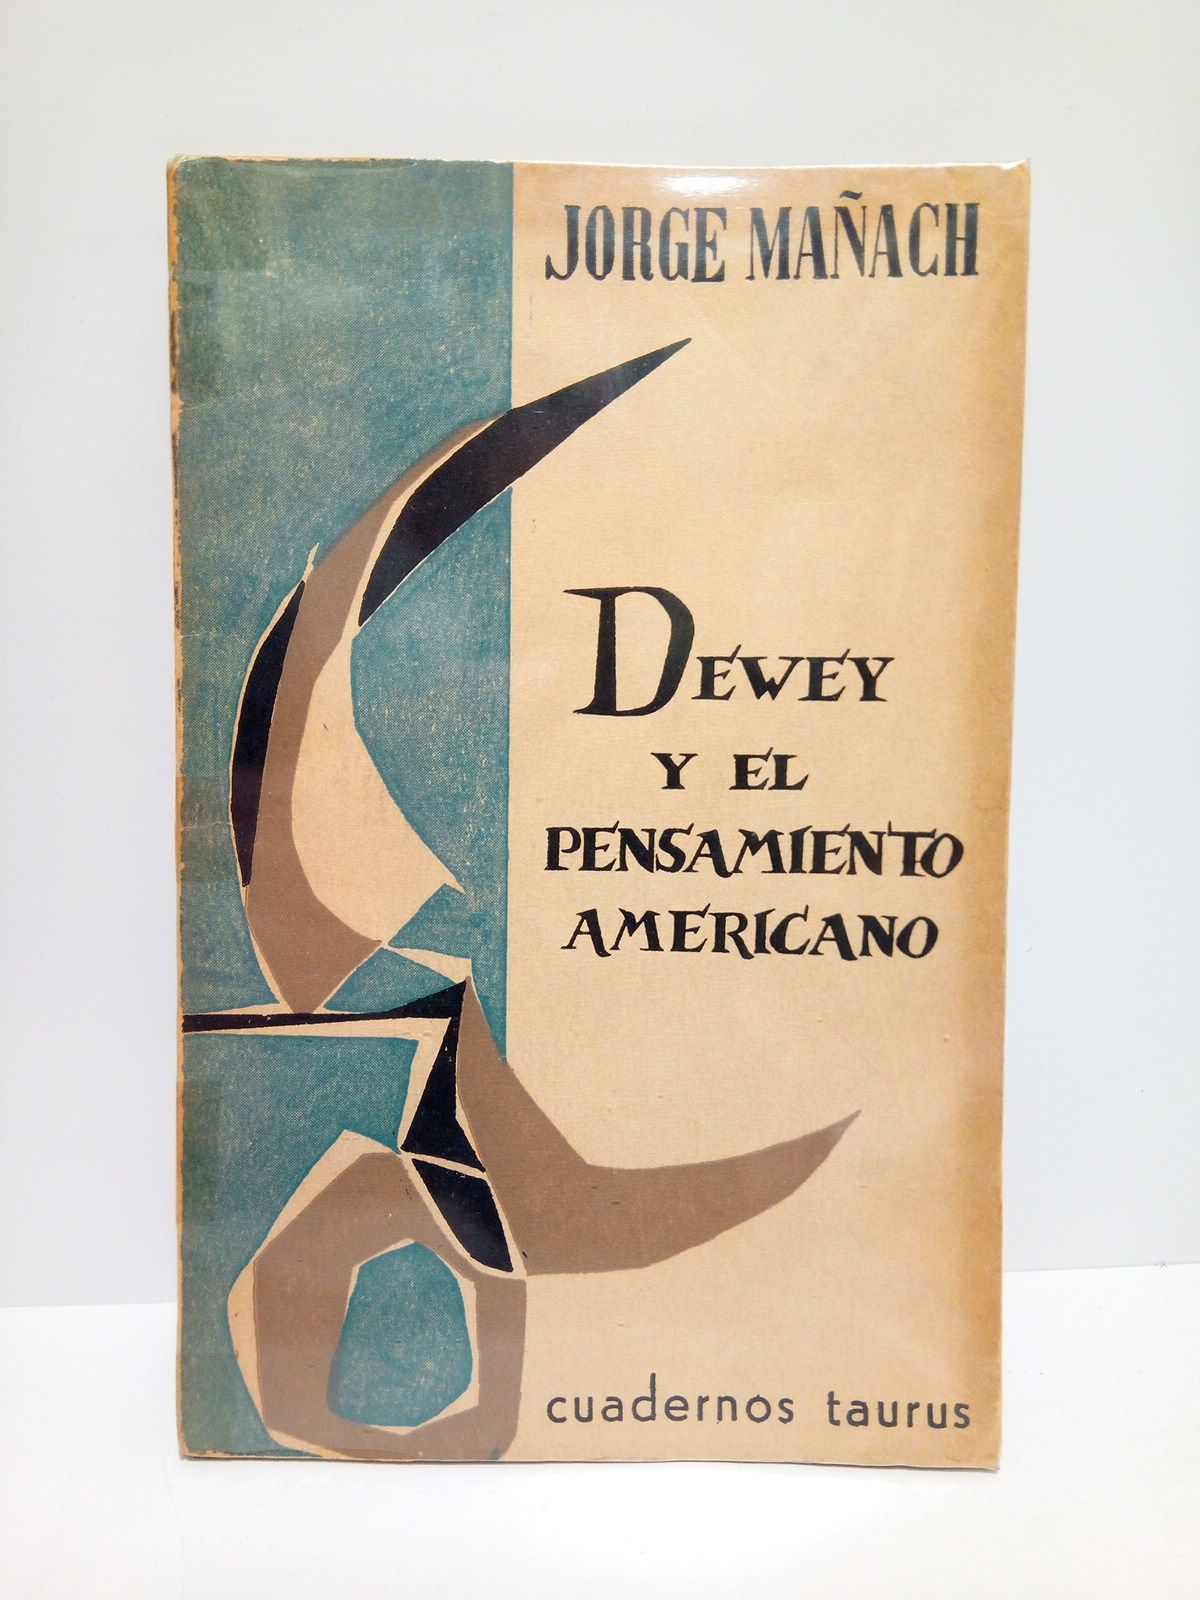 MAACH, Jorge - Dewey y el pensamiento americano